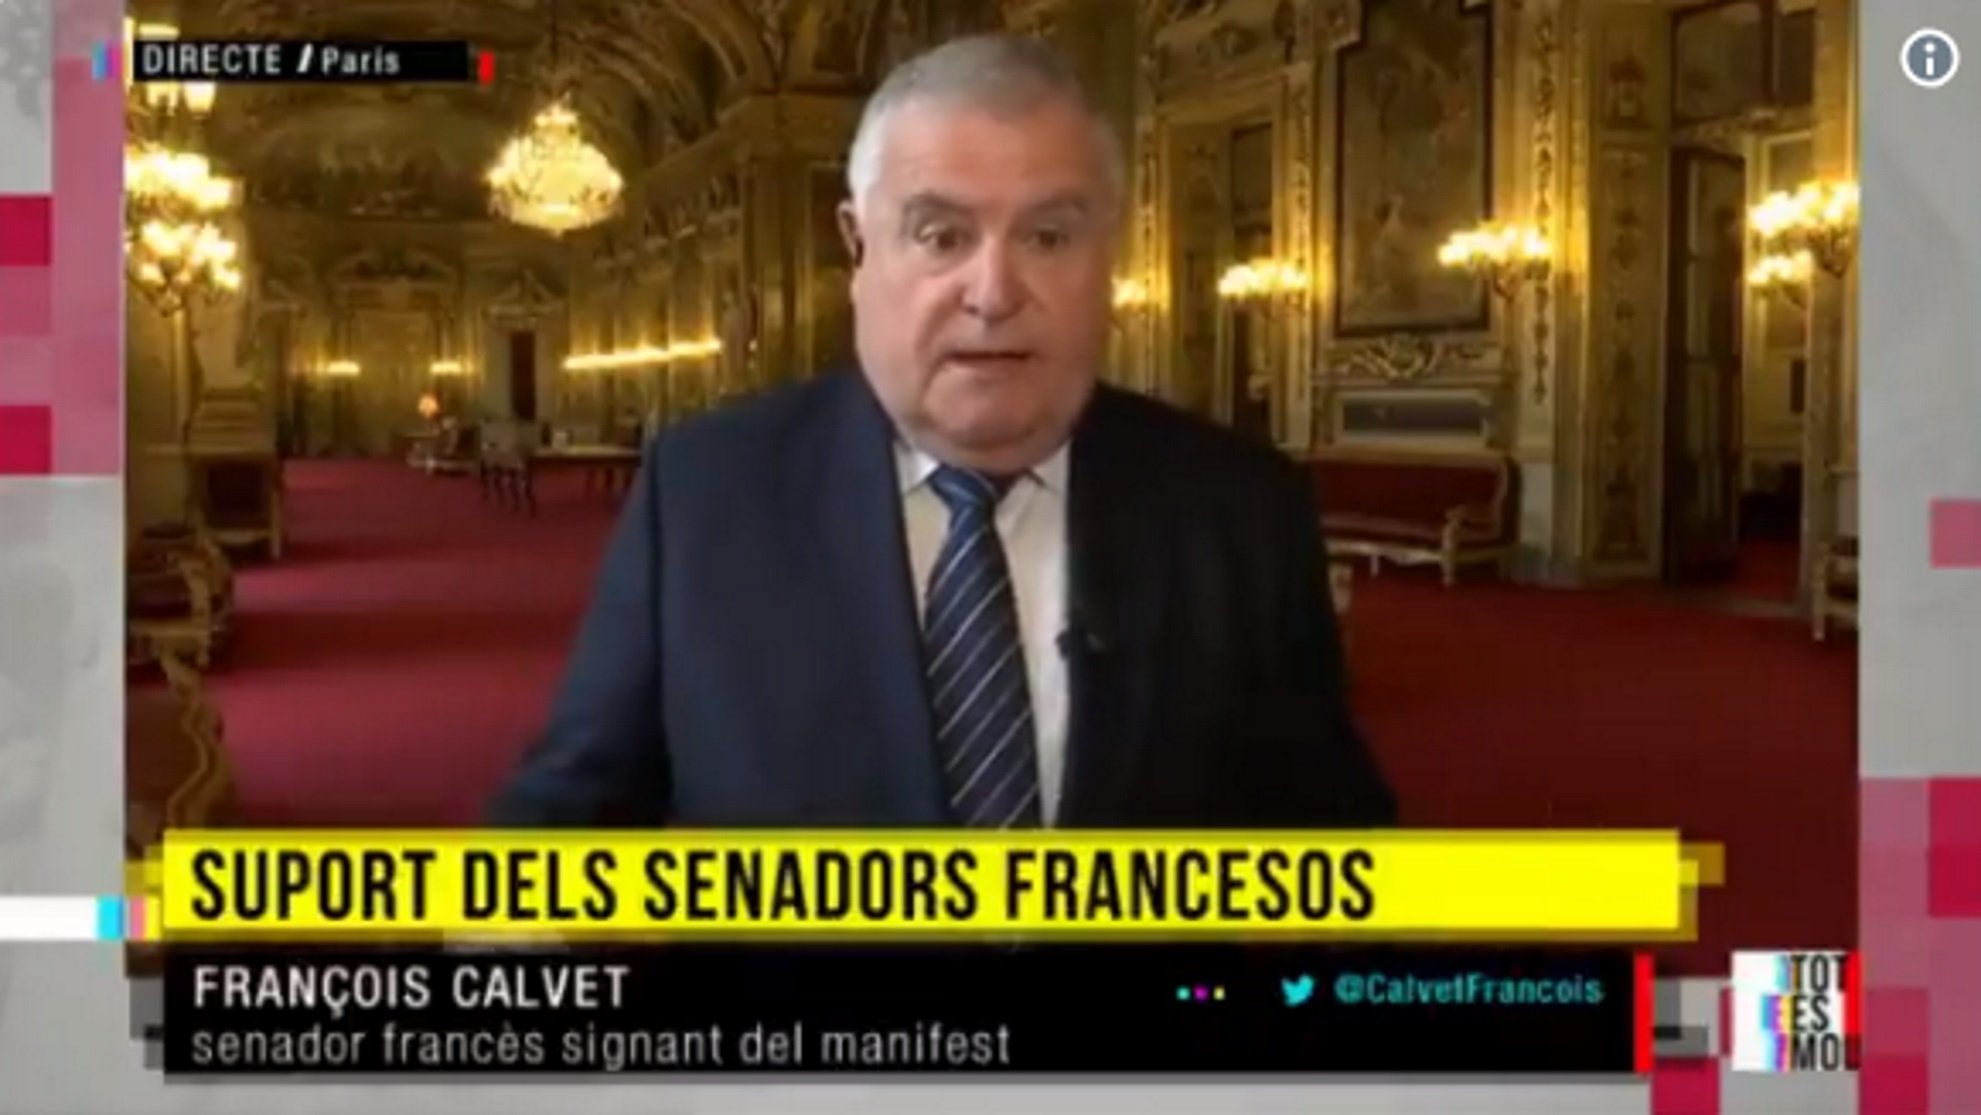 Siguen las críticas de senadores franceses: "España no es una democracia en justicia"